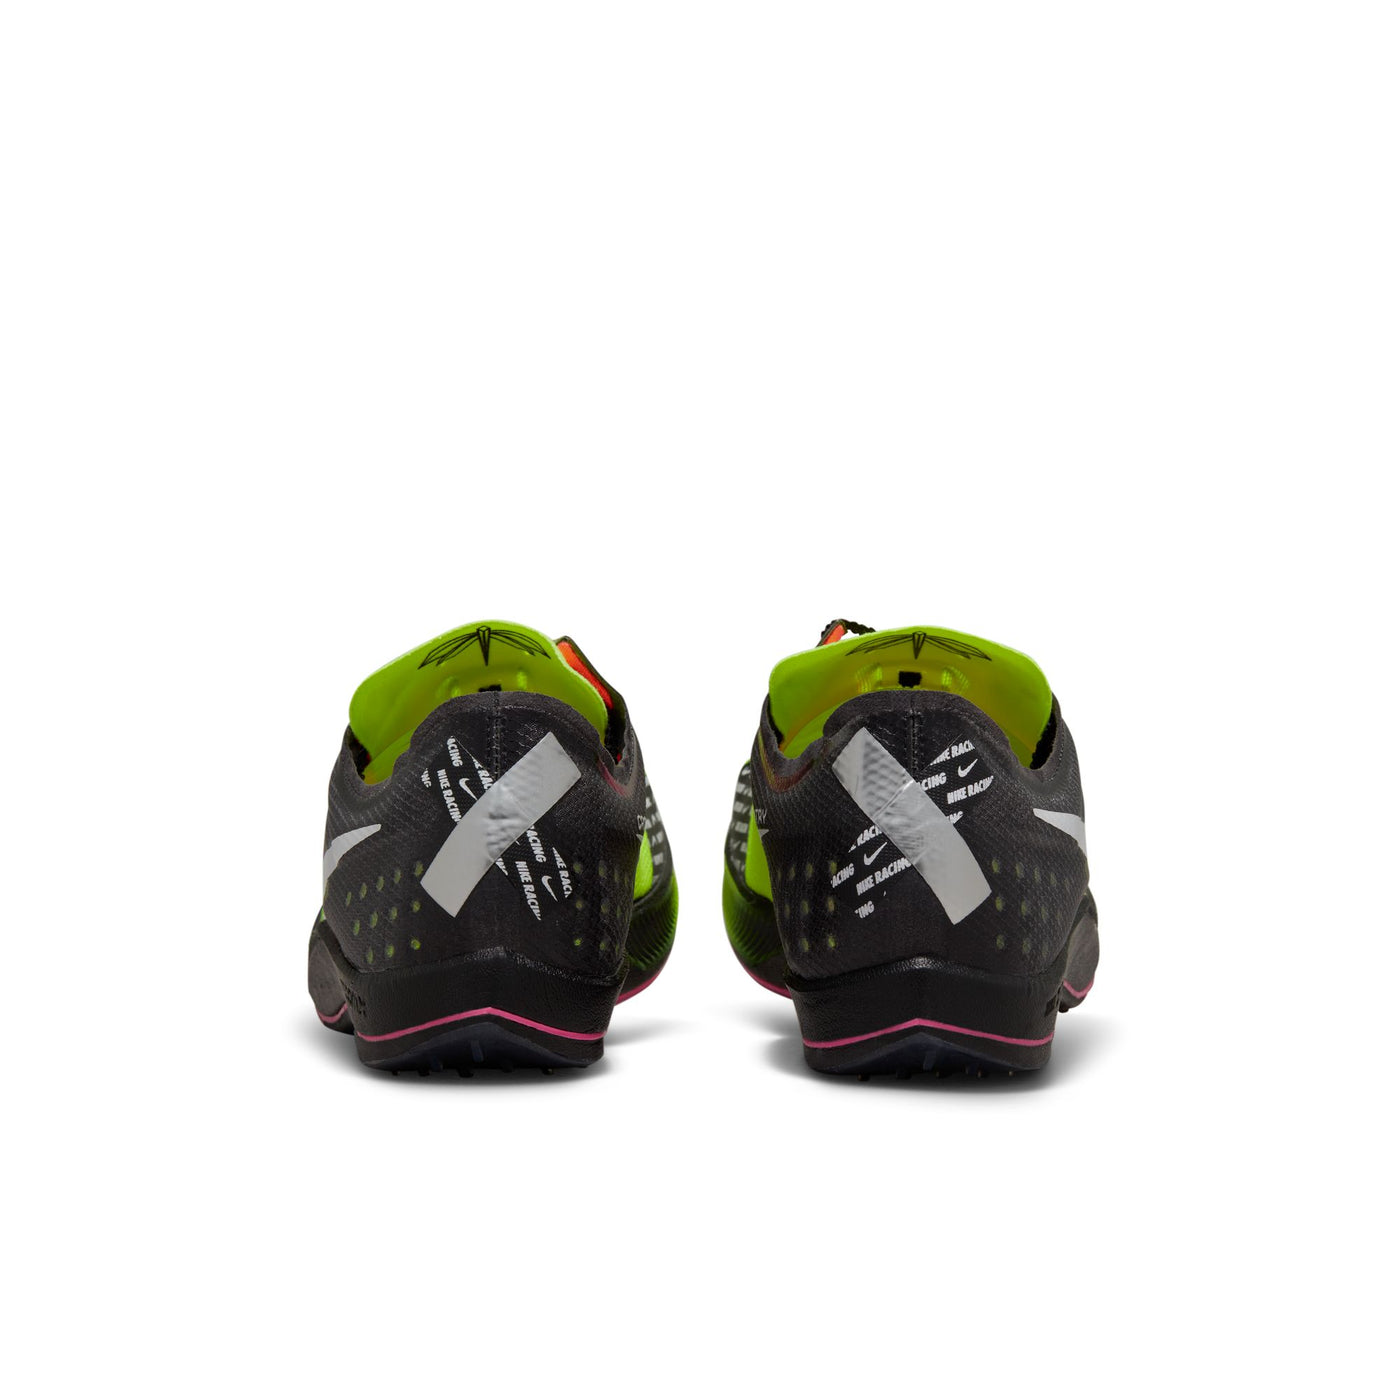 Unisex Nike ZoomX Dragonfly XC - DX7992-700